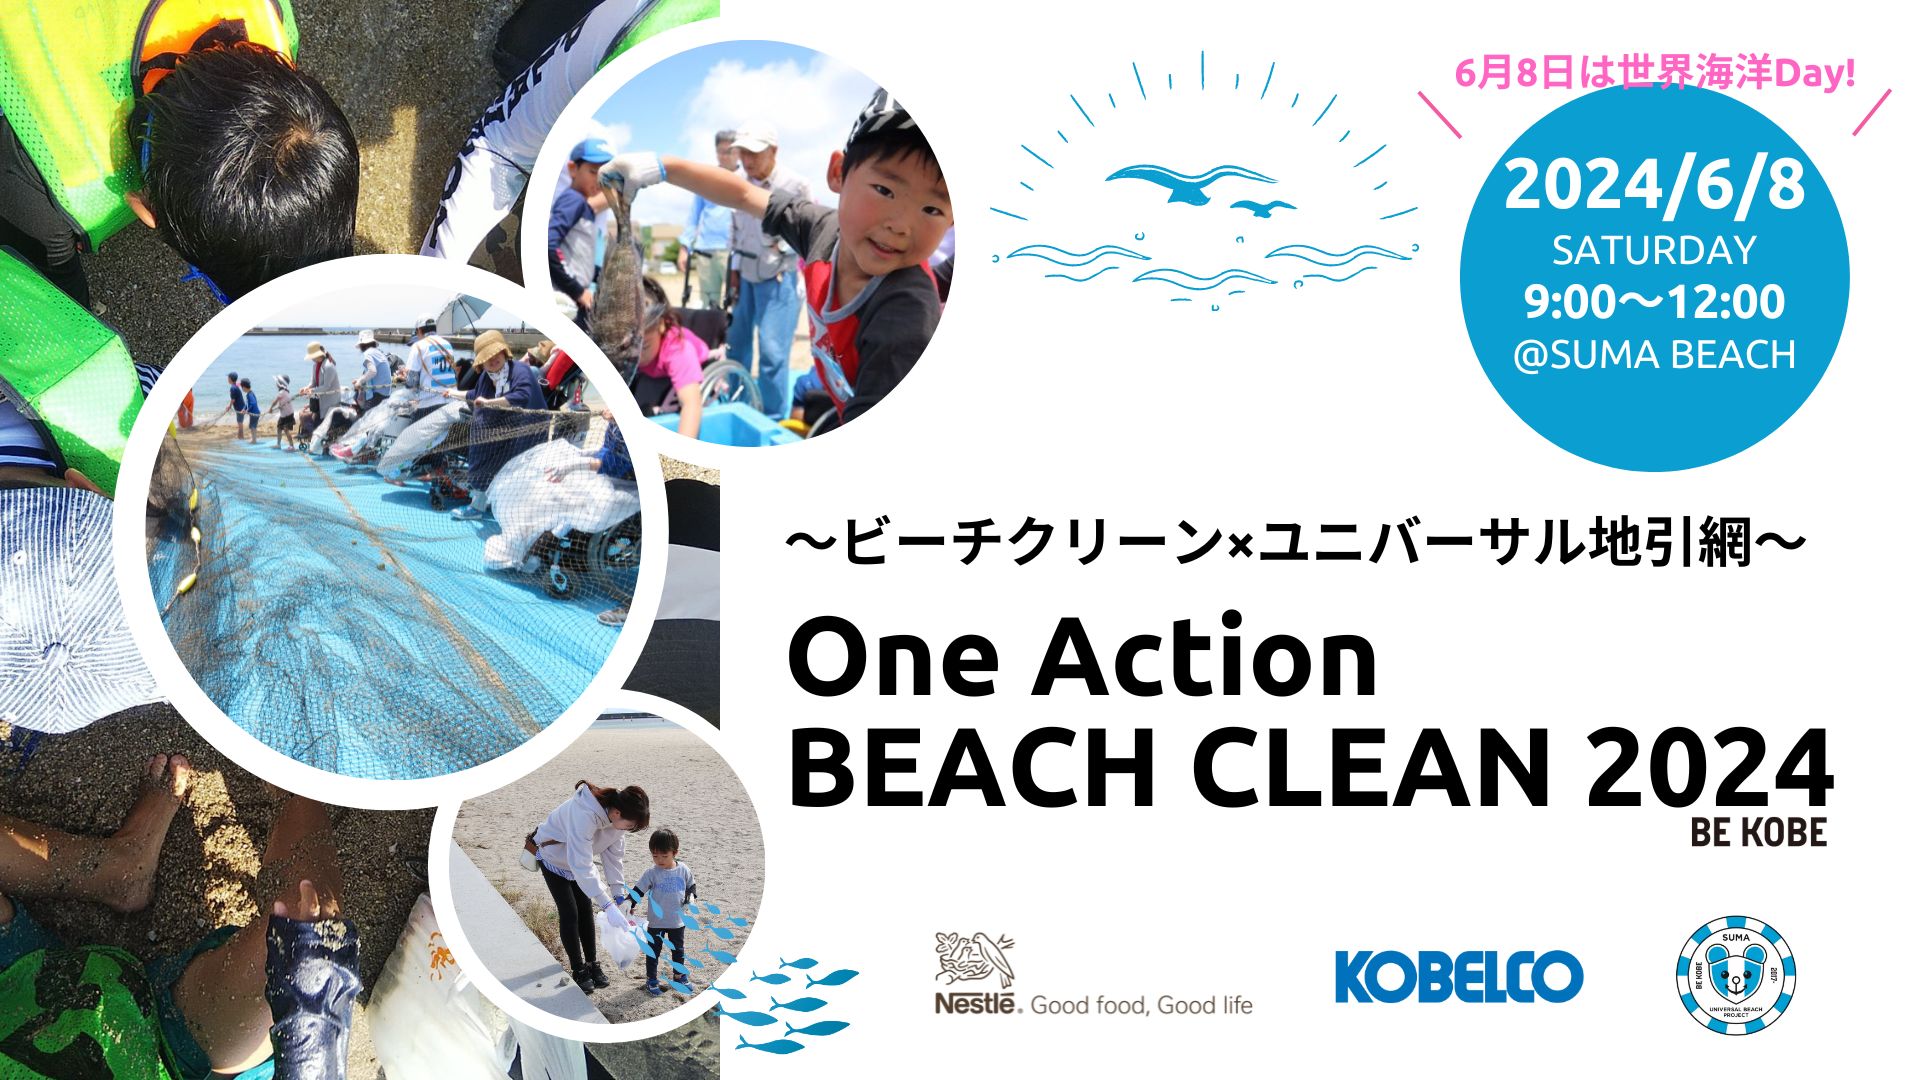 ネスレ×KOBELCO×須磨UBP 共同アクション『One Action Beach Clean 2024 ×ユニバーサル地引網』のサブ画像1